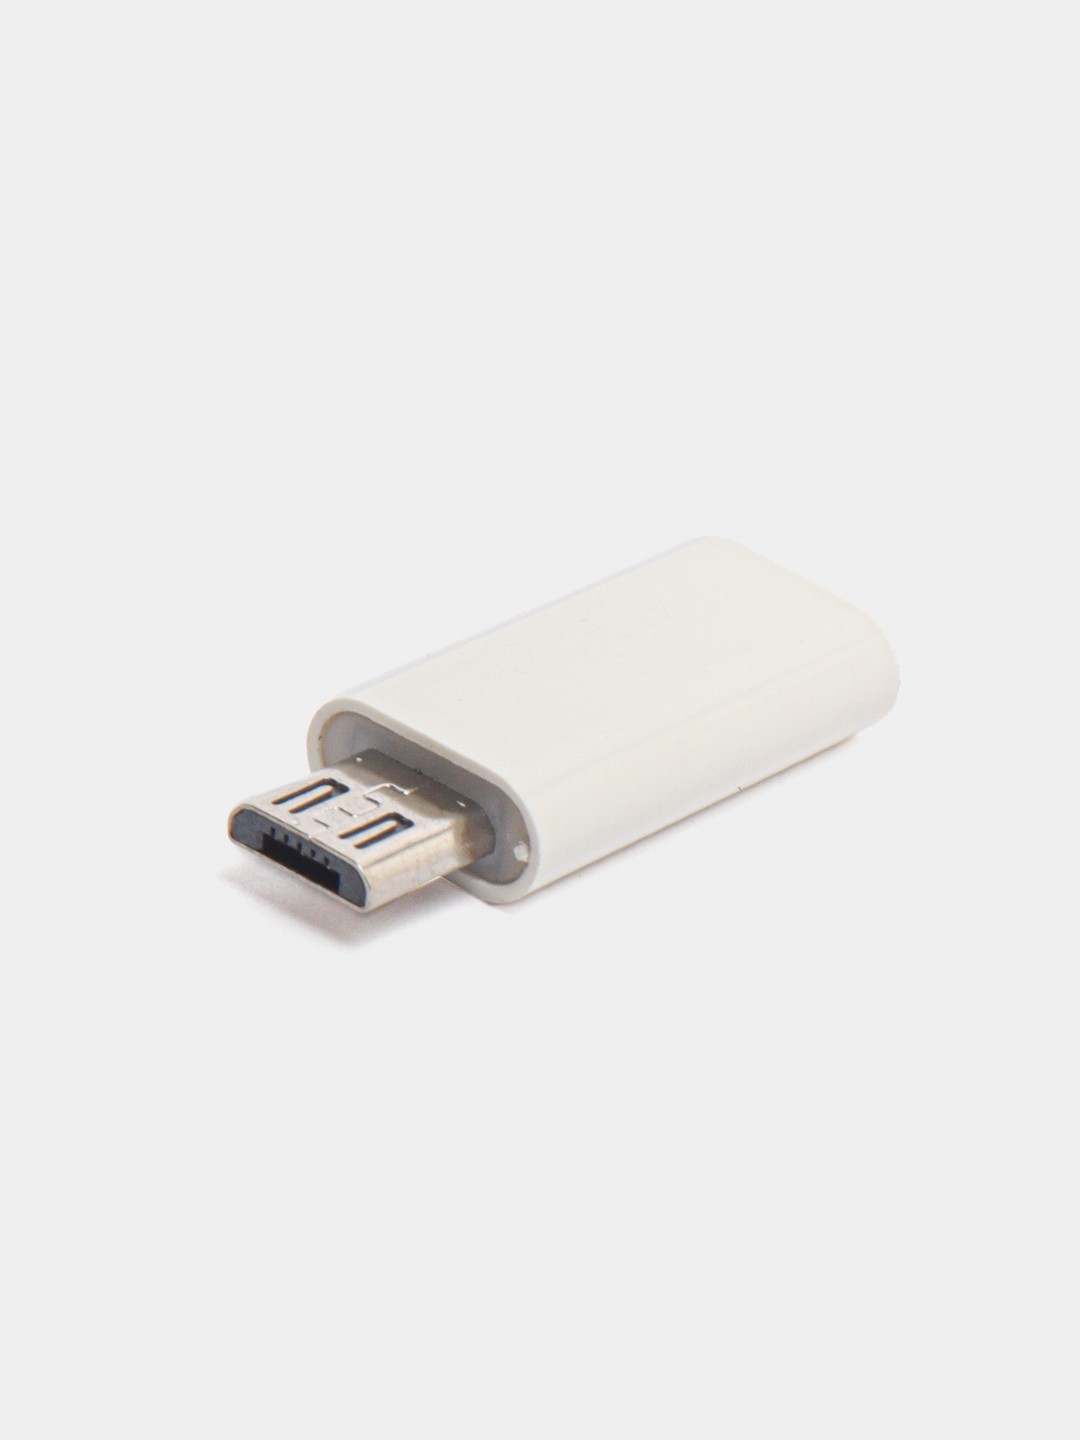  переходник USB Type C на micro USB за 89.1 ₽  в интернет .